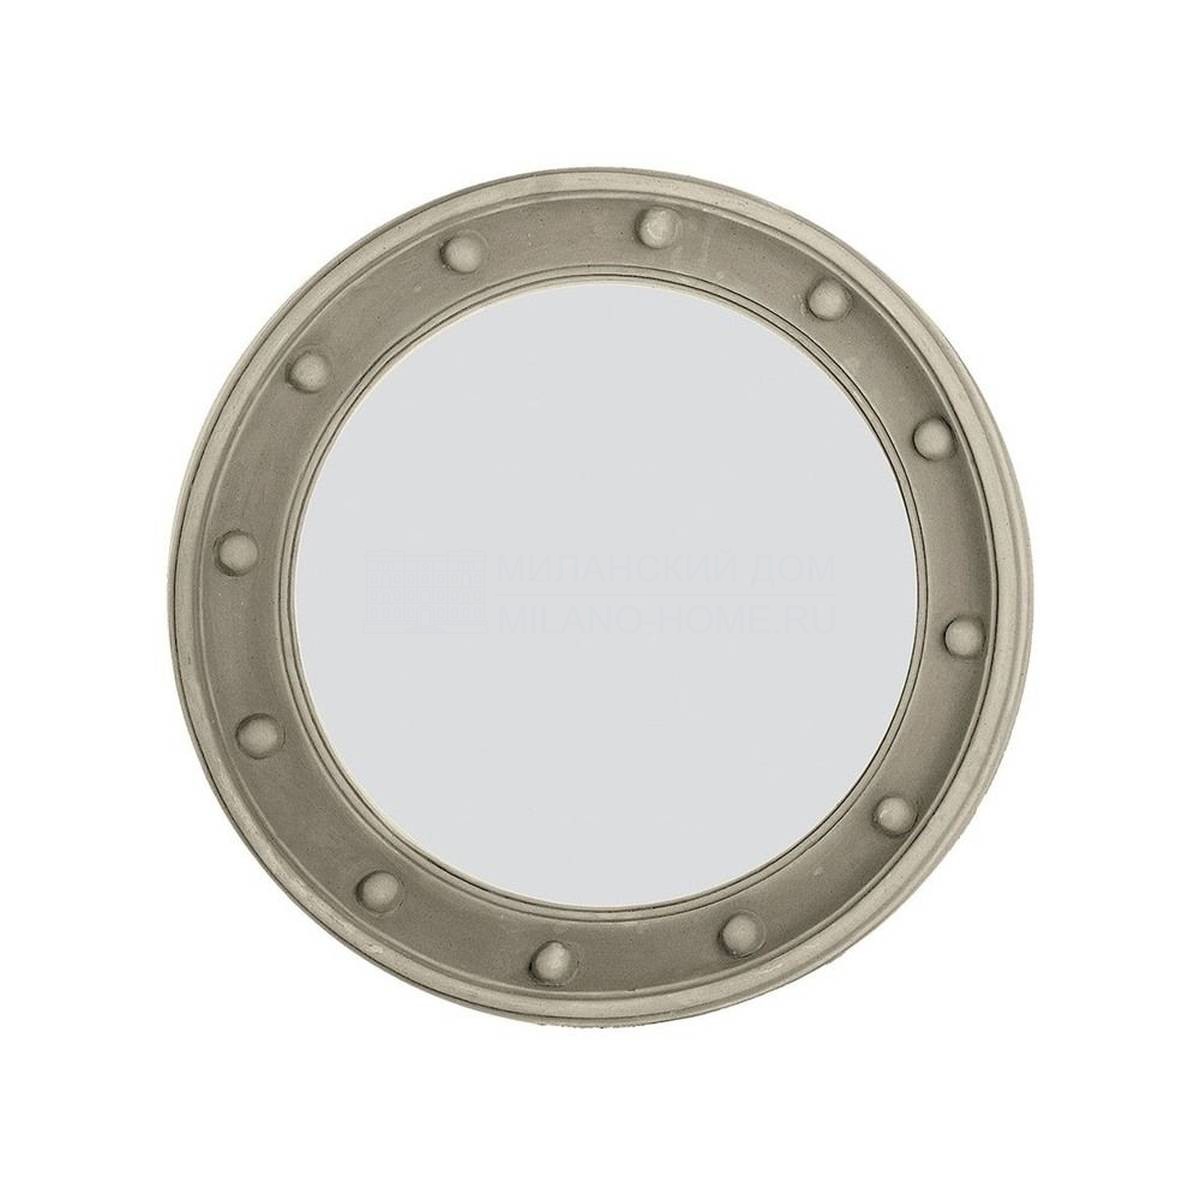 Зеркало настенное Round mirror H-1215  из Испании фабрики GUADARTE